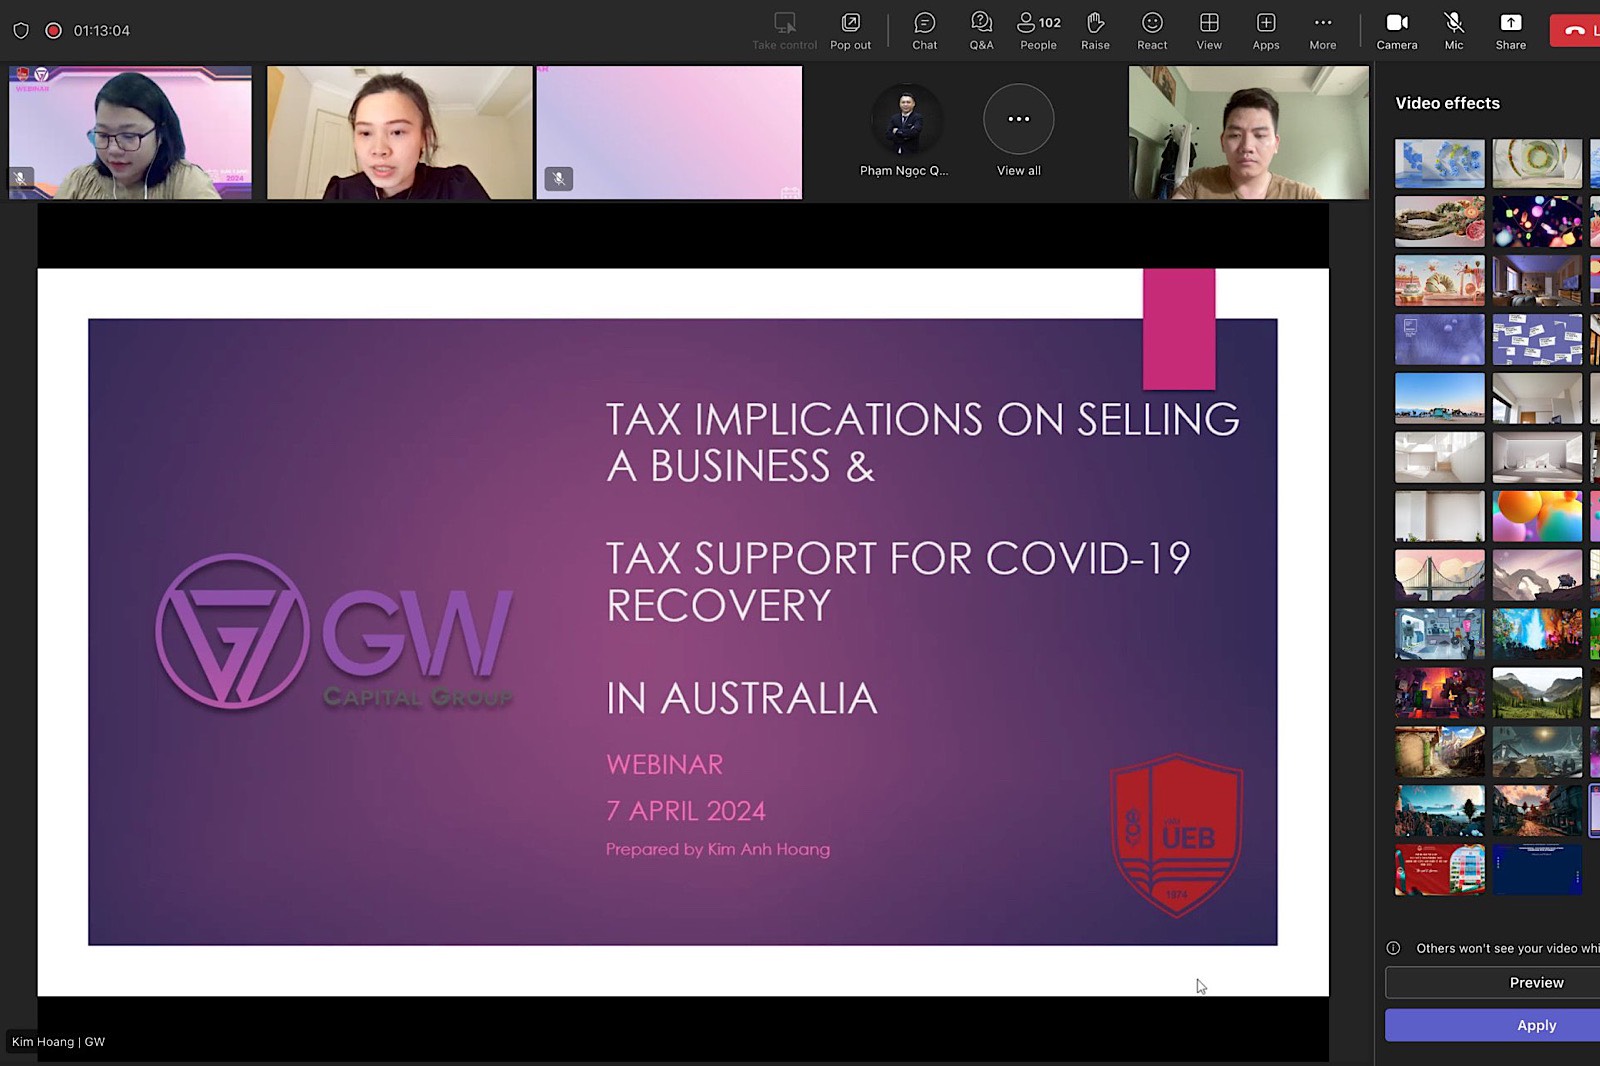 Webinar “Kiểm toán và thanh tra thuế trong quá trình phục hồi sau đại dịch COVID-19” cùng diễn giả đến từ Australia